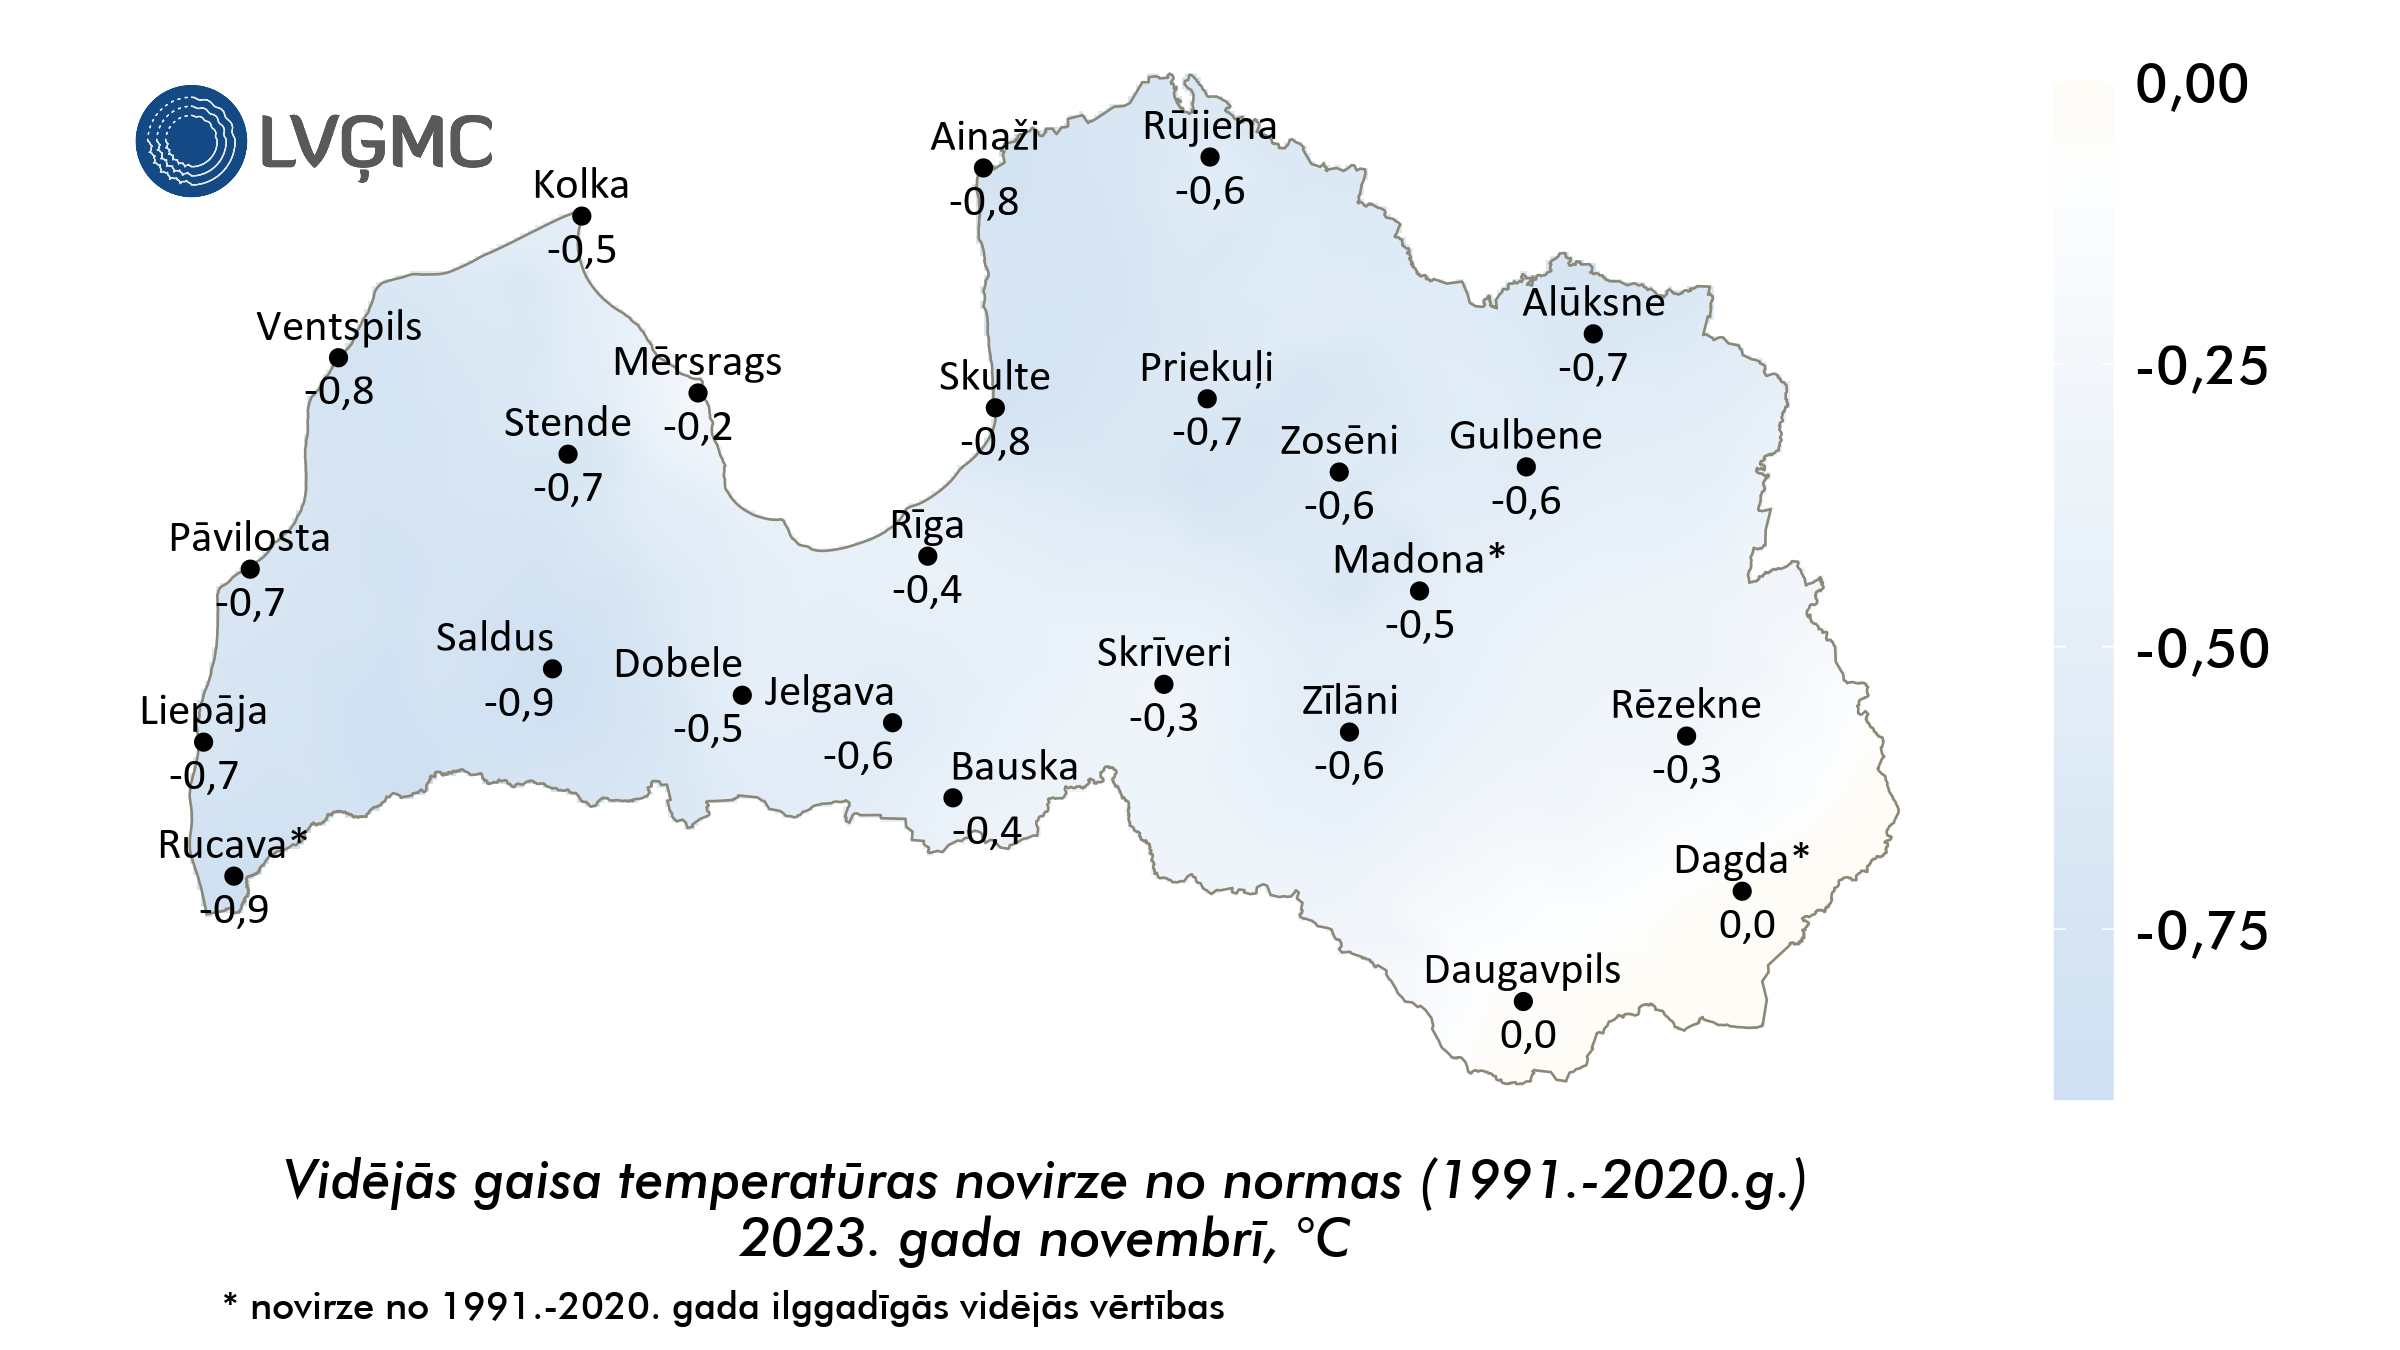 Vidējās gaisa temperatūras novirze no normas 2023. gada novembrī, °C 